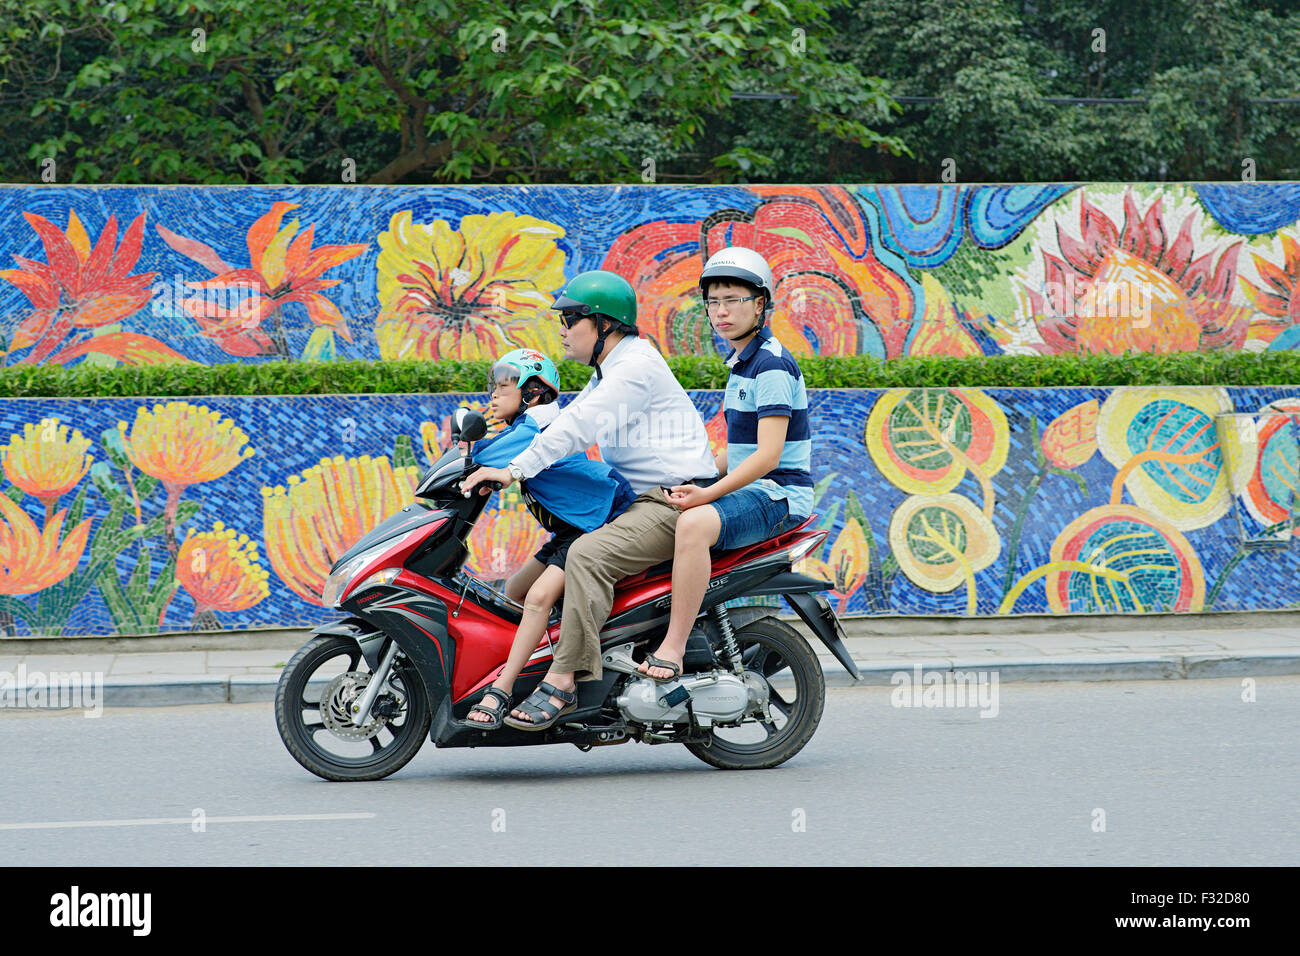 Les cyclomoteurs et les motos sont partout à Hanoi, Vietnam. Ce n'est pas rare de voir toute une famille à cheval sur seulement un scooter. Banque D'Images